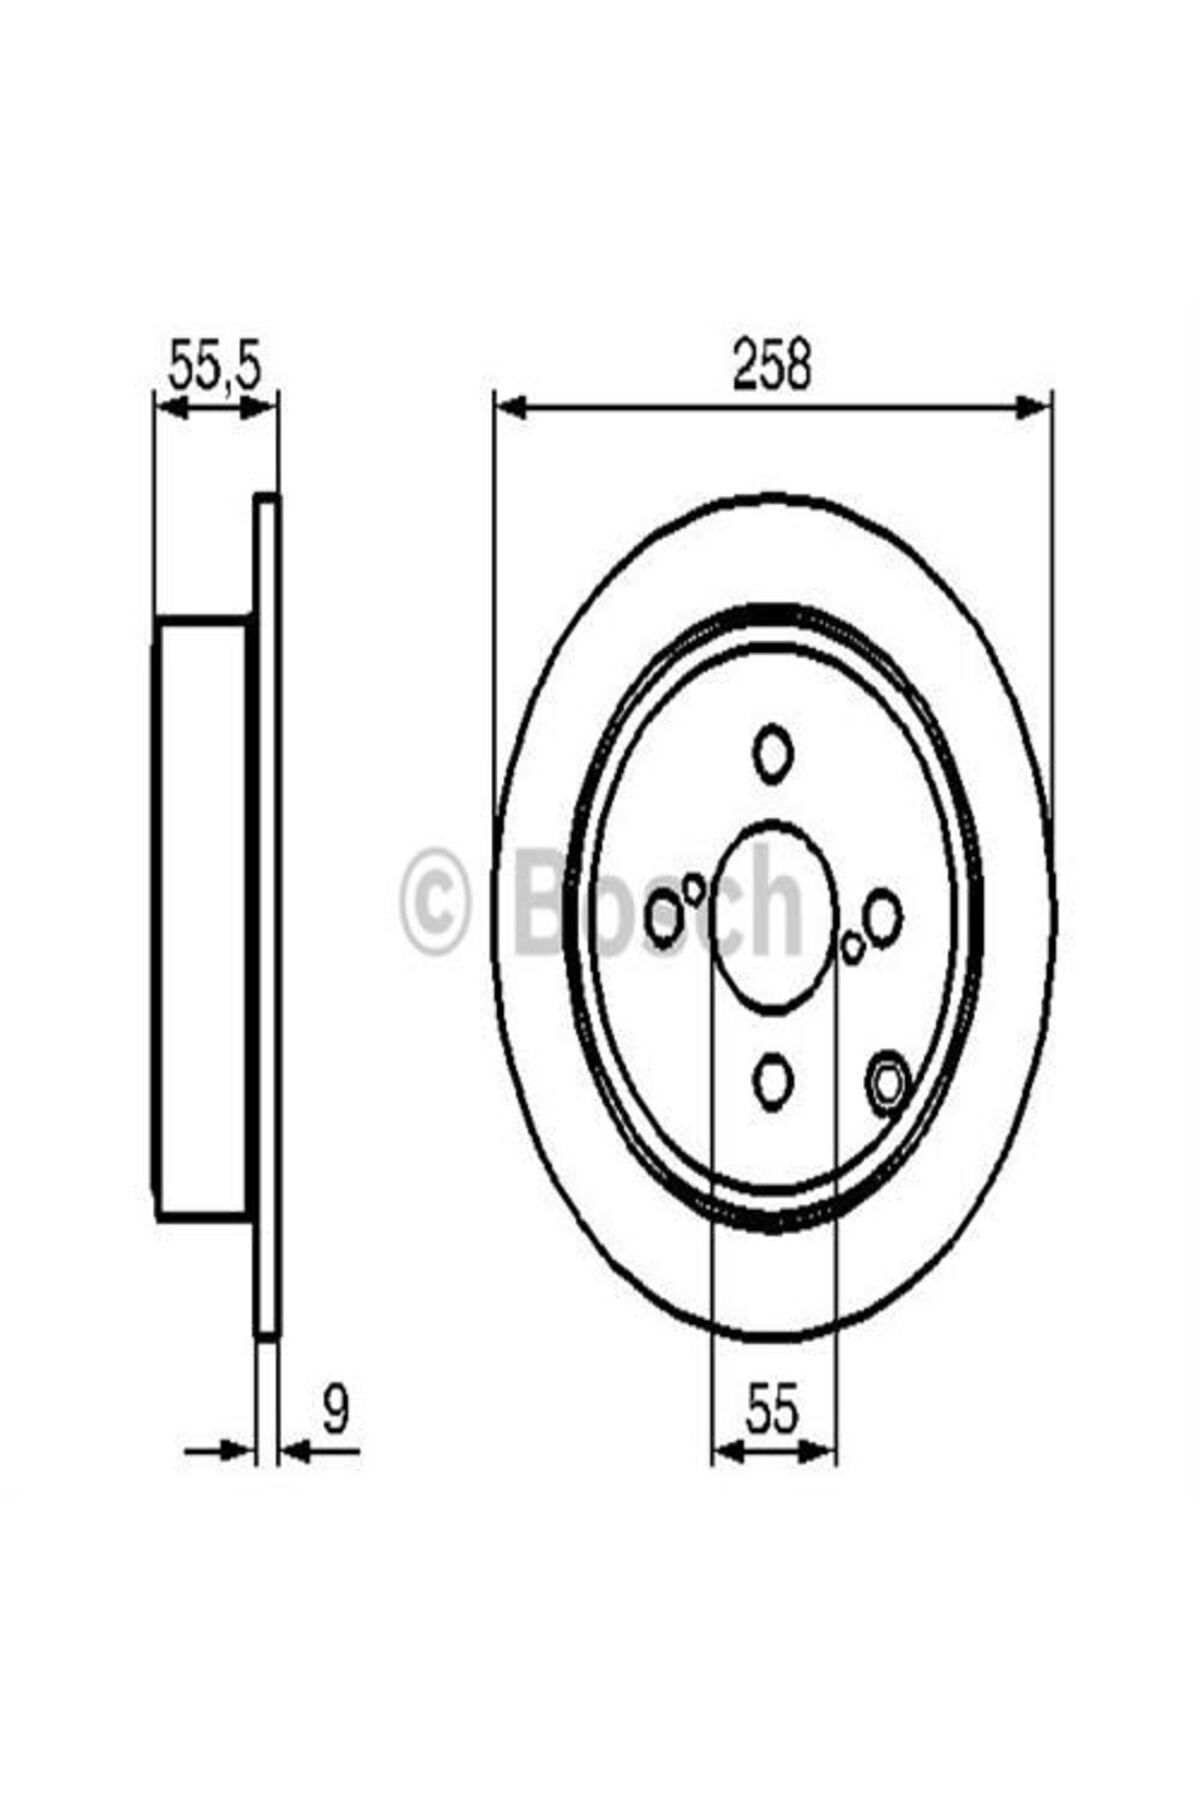 Bosch Arka Fren Aynası Corolla 1.4 Vvti-1.6 Vvti-1.8 Vvtli 02 1.8 Vvtli 05 258×9x4dlbos-0986479086 0986479